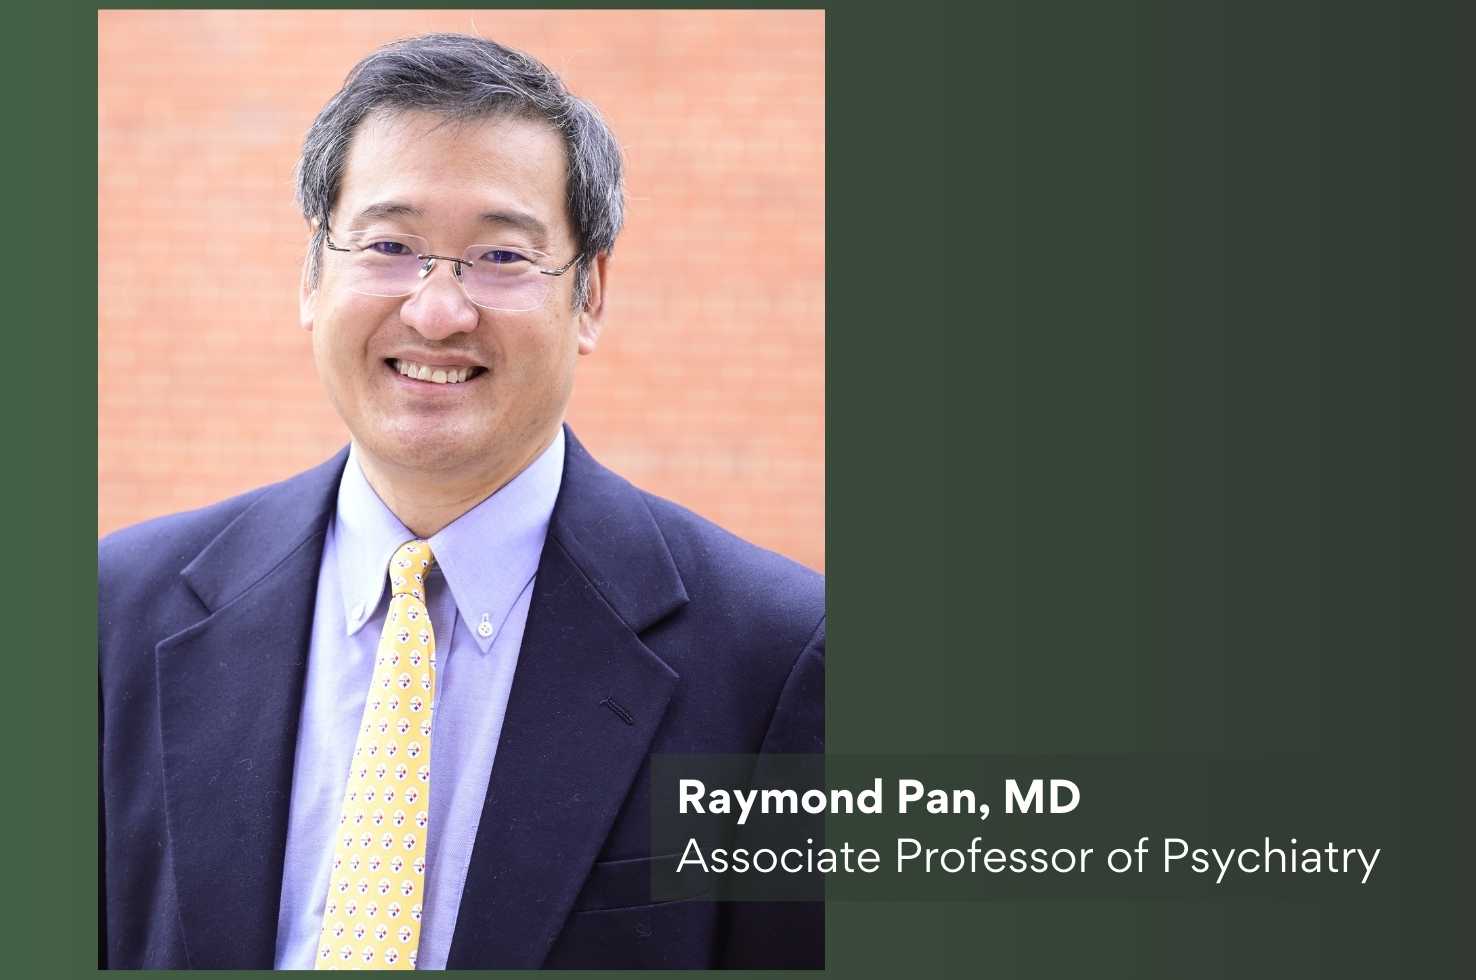 Dr. Raymond Pan